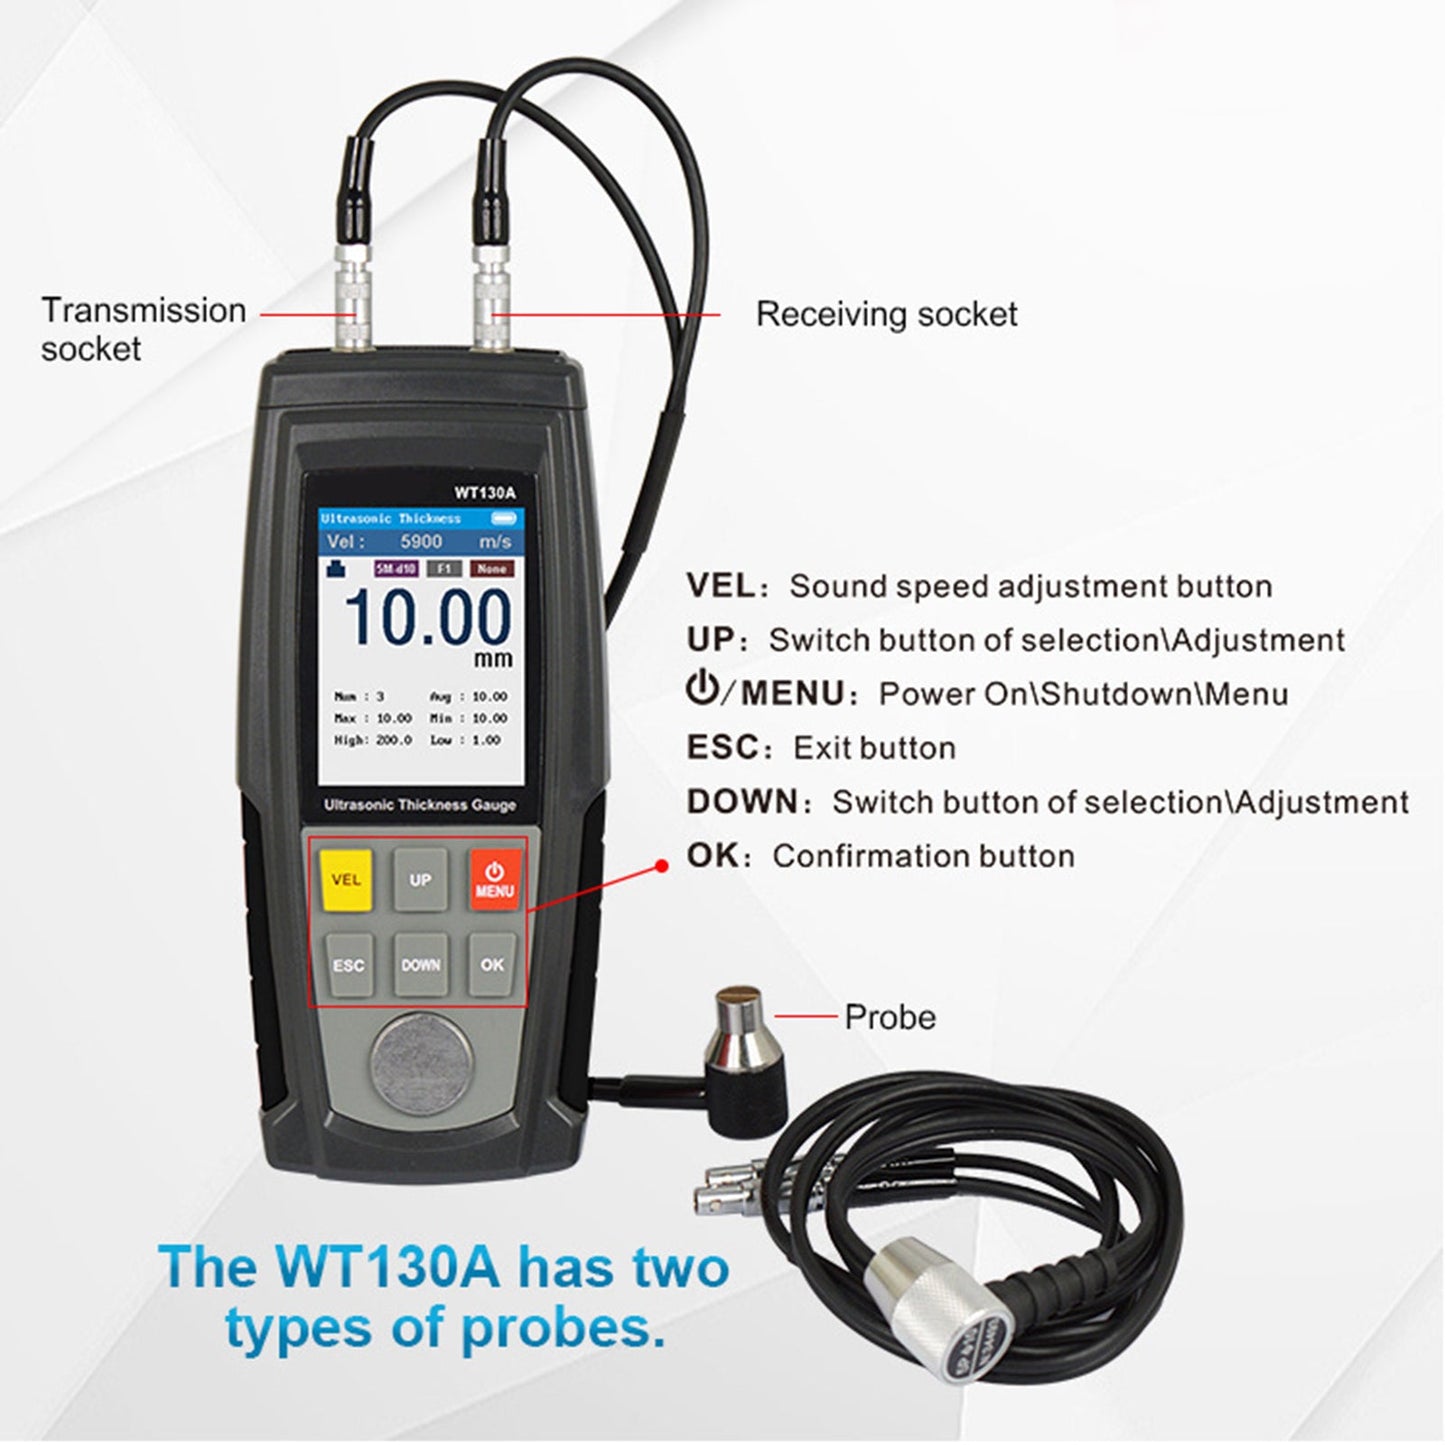 WT100A Outil de testeur LCD Capteur intelligent Jauge d'épaisseur à ultrasons Vitesse du son